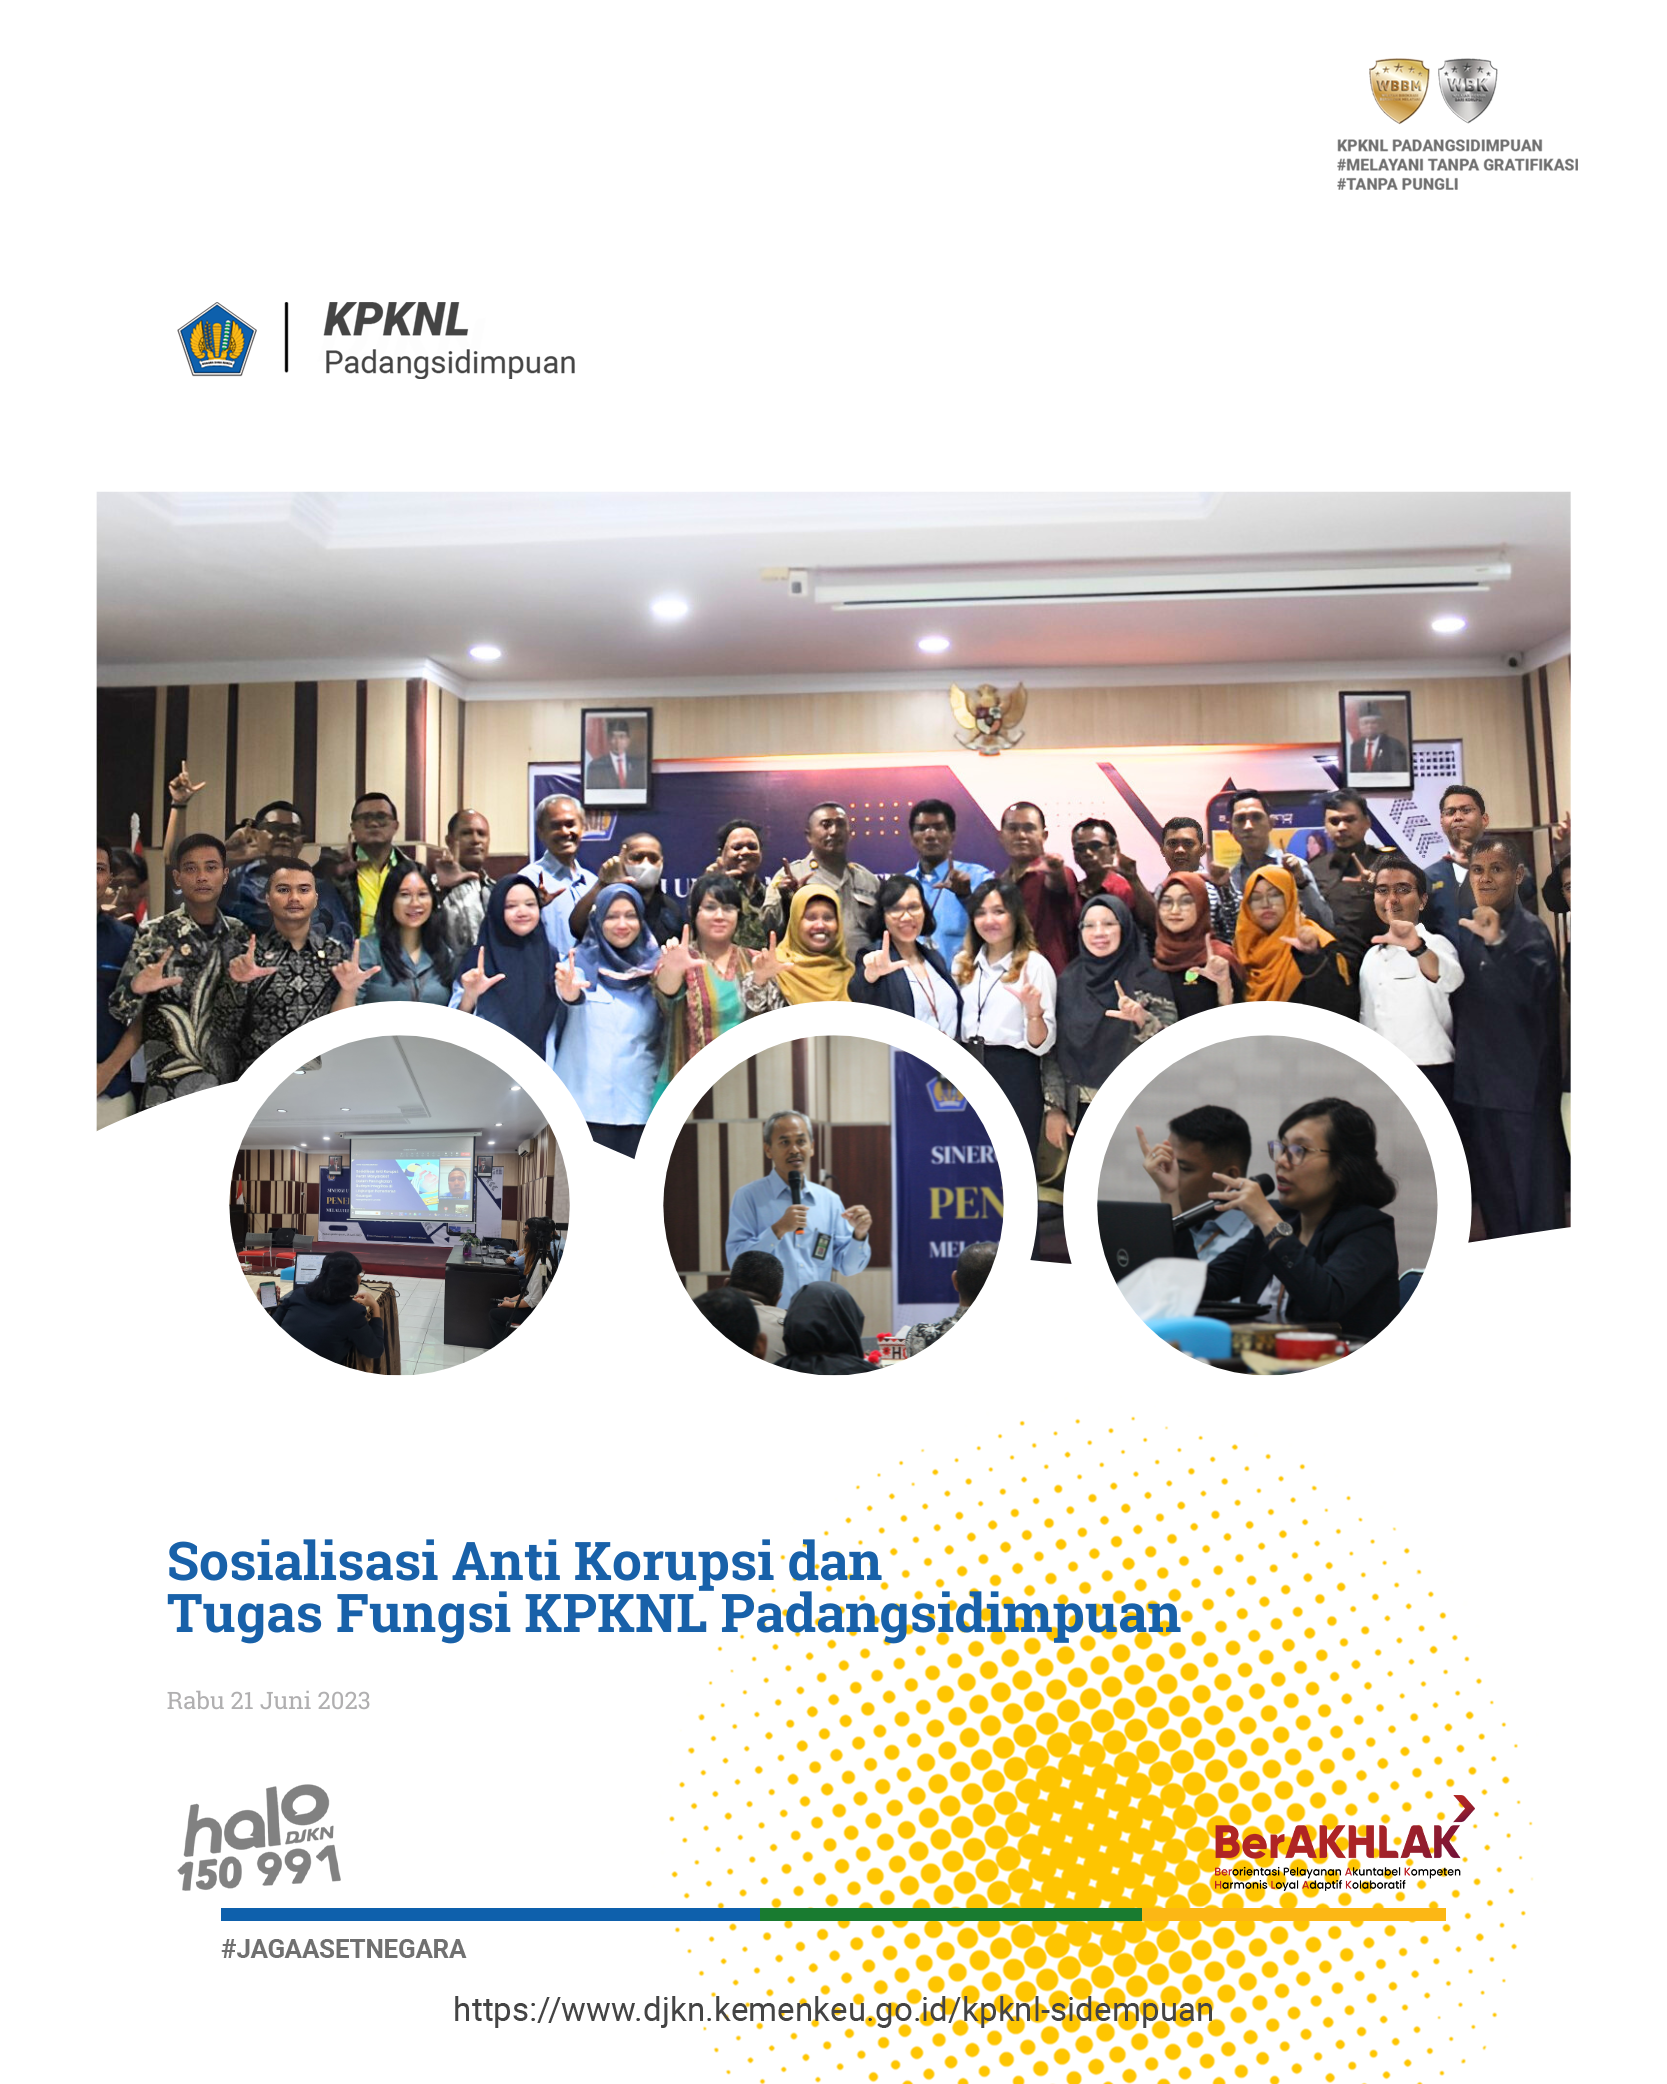 KPKNL Padangsidimpuan Sosialisasikan Peraturan Terkait Lelang dan Piutang Negara